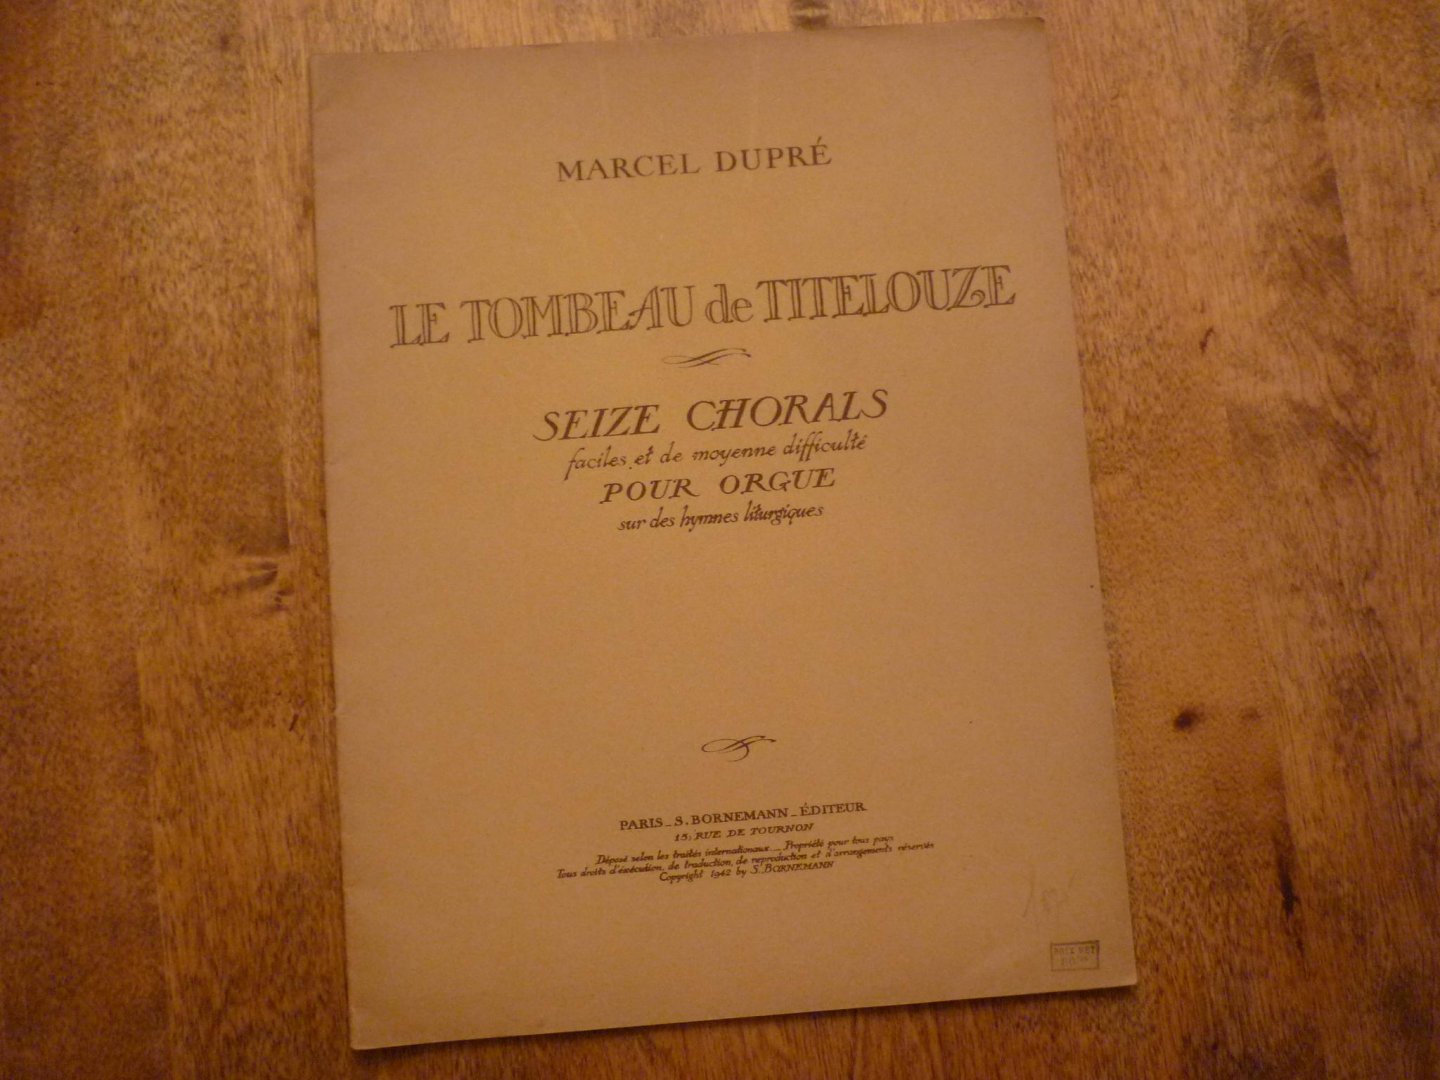 Dupré; Marcel - Le tombeau de titelouze; Seize chorals faciles, et de moyenne difficulte pour orgue; sur des hymnes litergiques